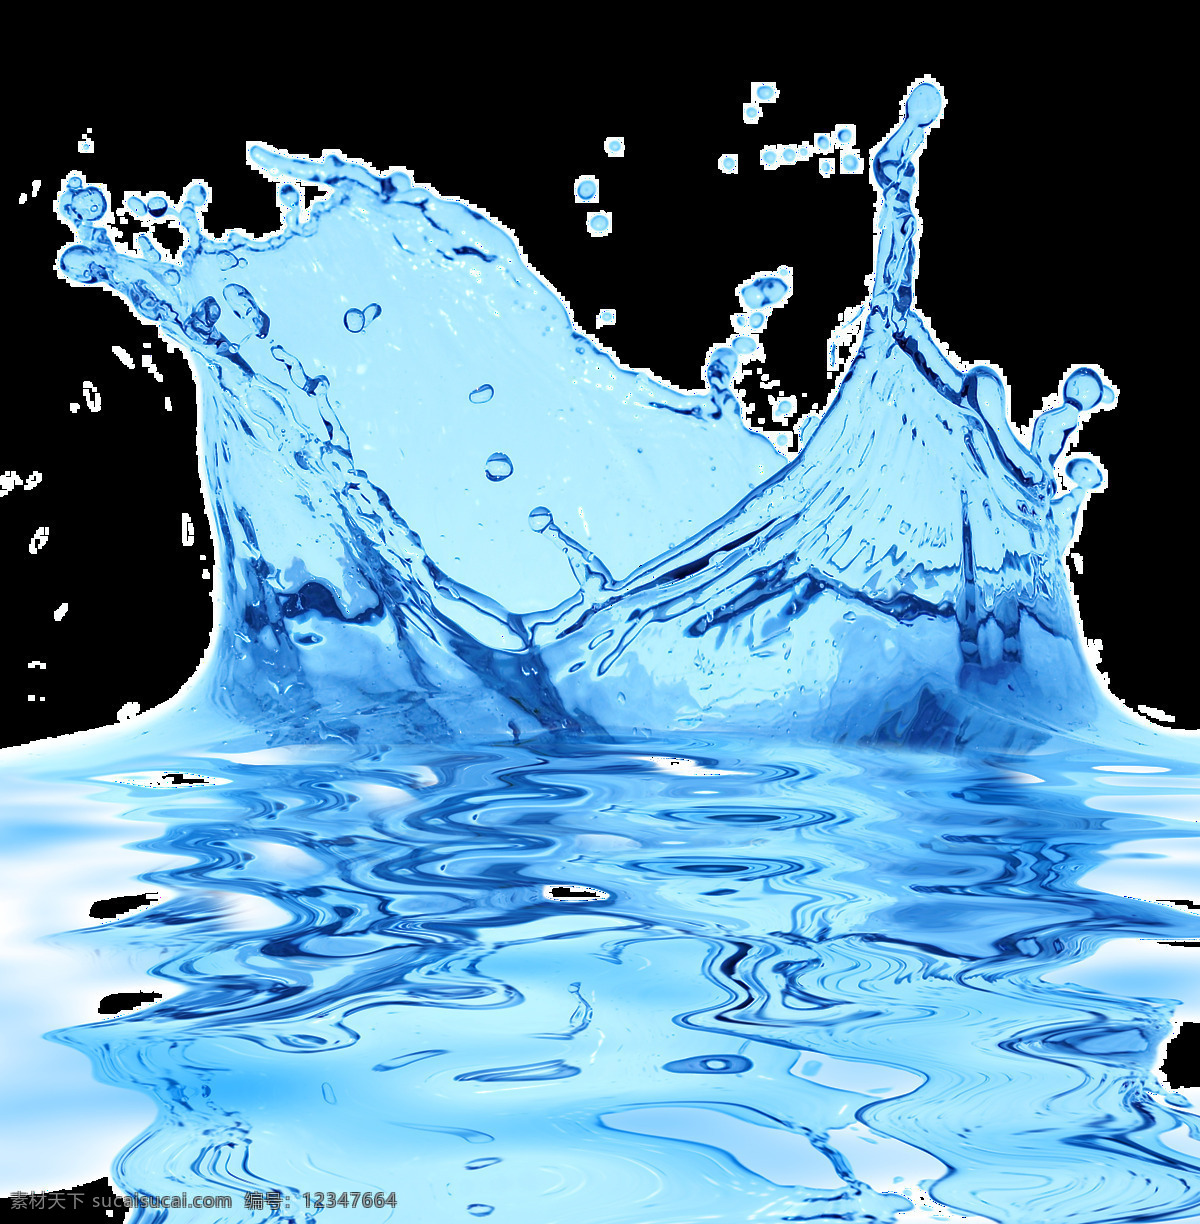 蓝色 水花 免 抠 透明 图 层 水元素 水的素材 小水滴背景 溅起的水花 特效水素材 波浪 ps水滴素材 小水珠 水波 水广告元素 水元素海报 水纹元素 水滴 水珠